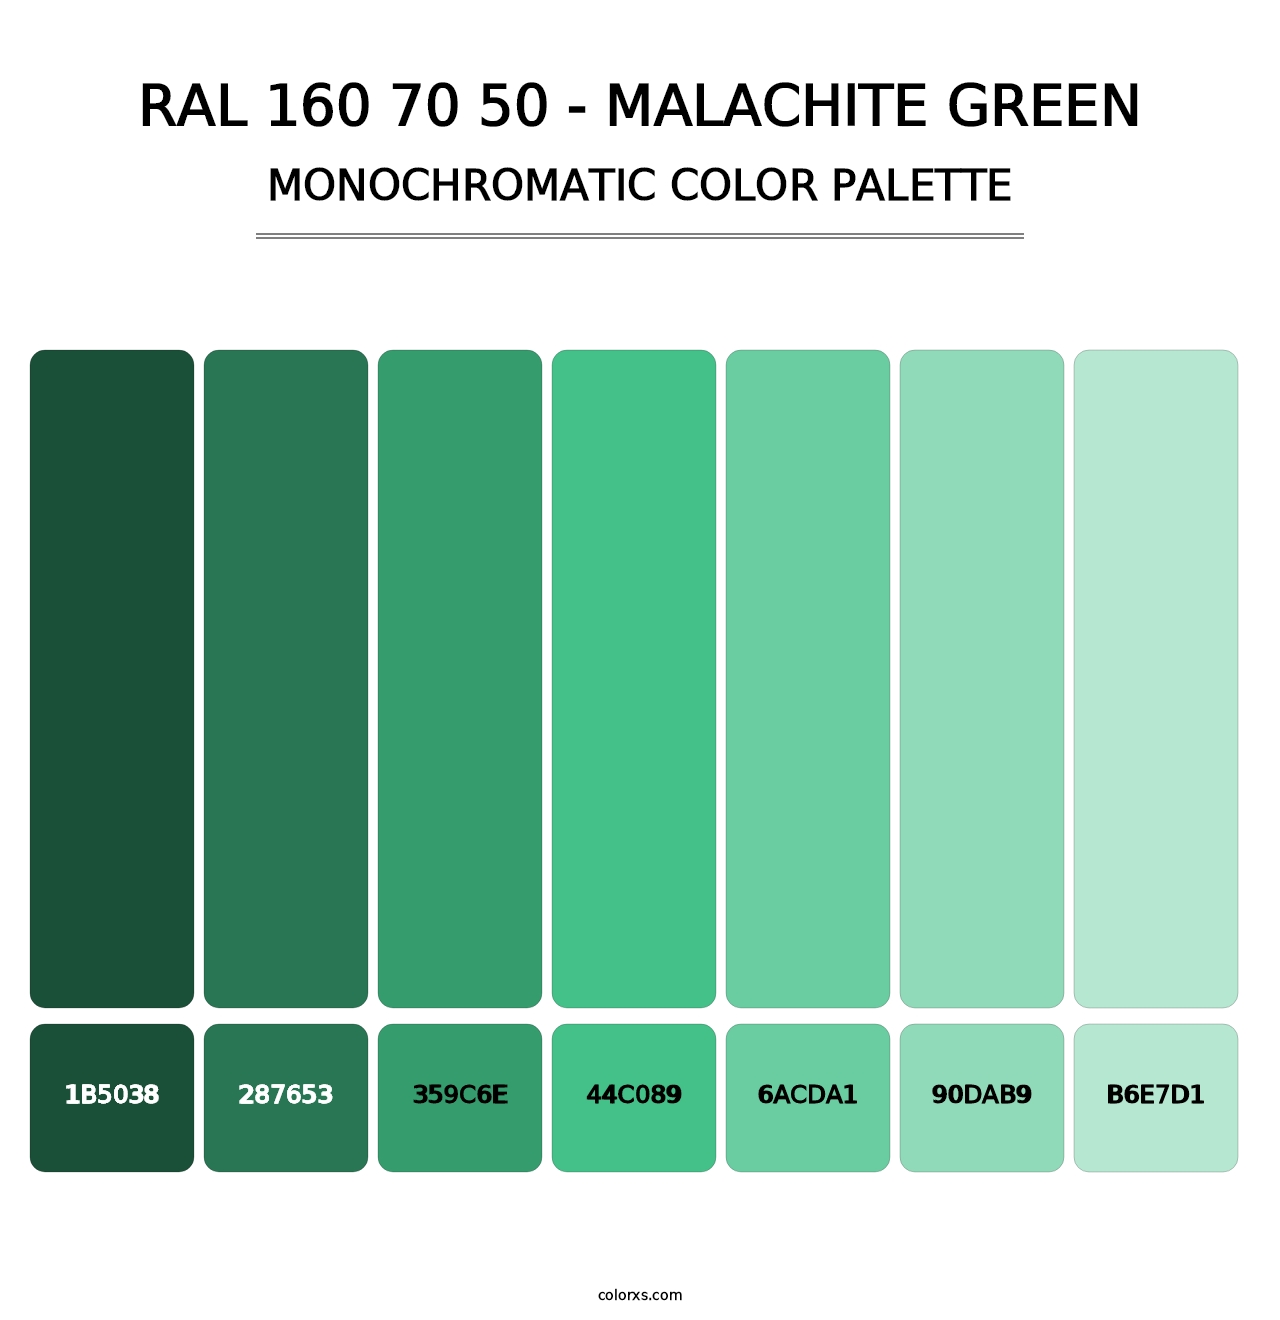 RAL 160 70 50 - Malachite Green - Monochromatic Color Palette